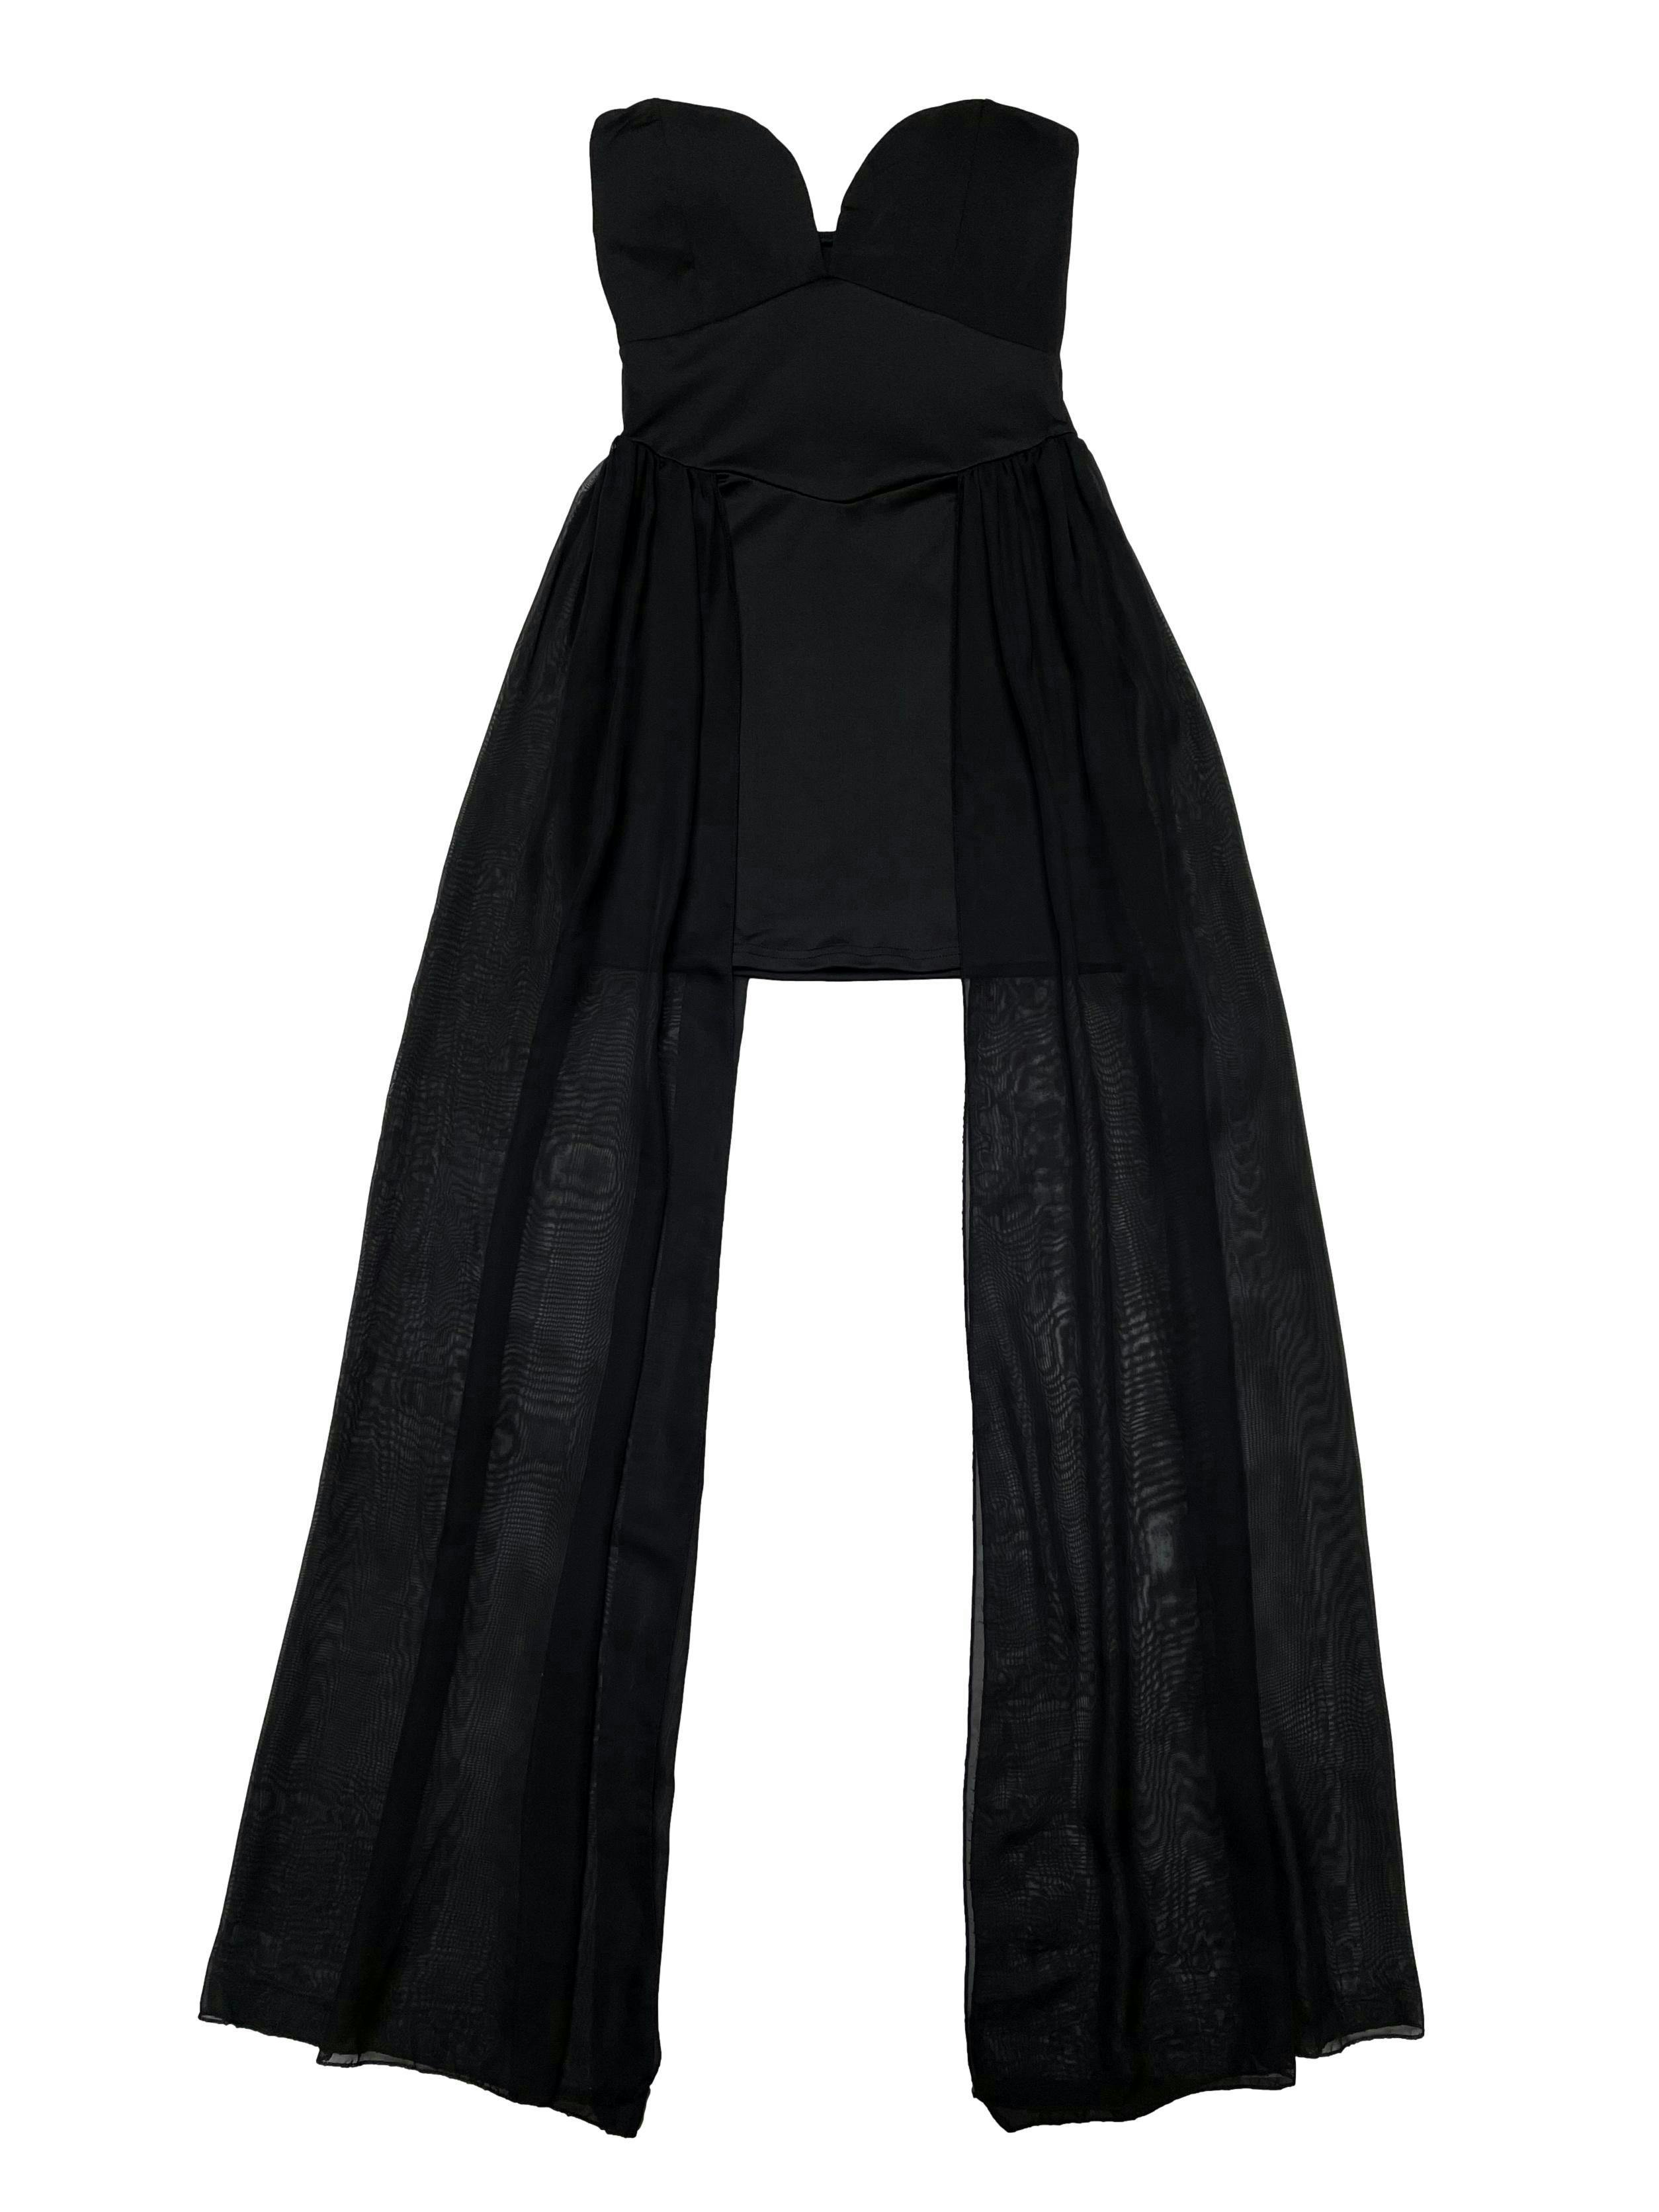 Vestido negro de lycra, escote corazón con copas, cierre lateral y capas de gasa en laterales. Largo 65-138cm